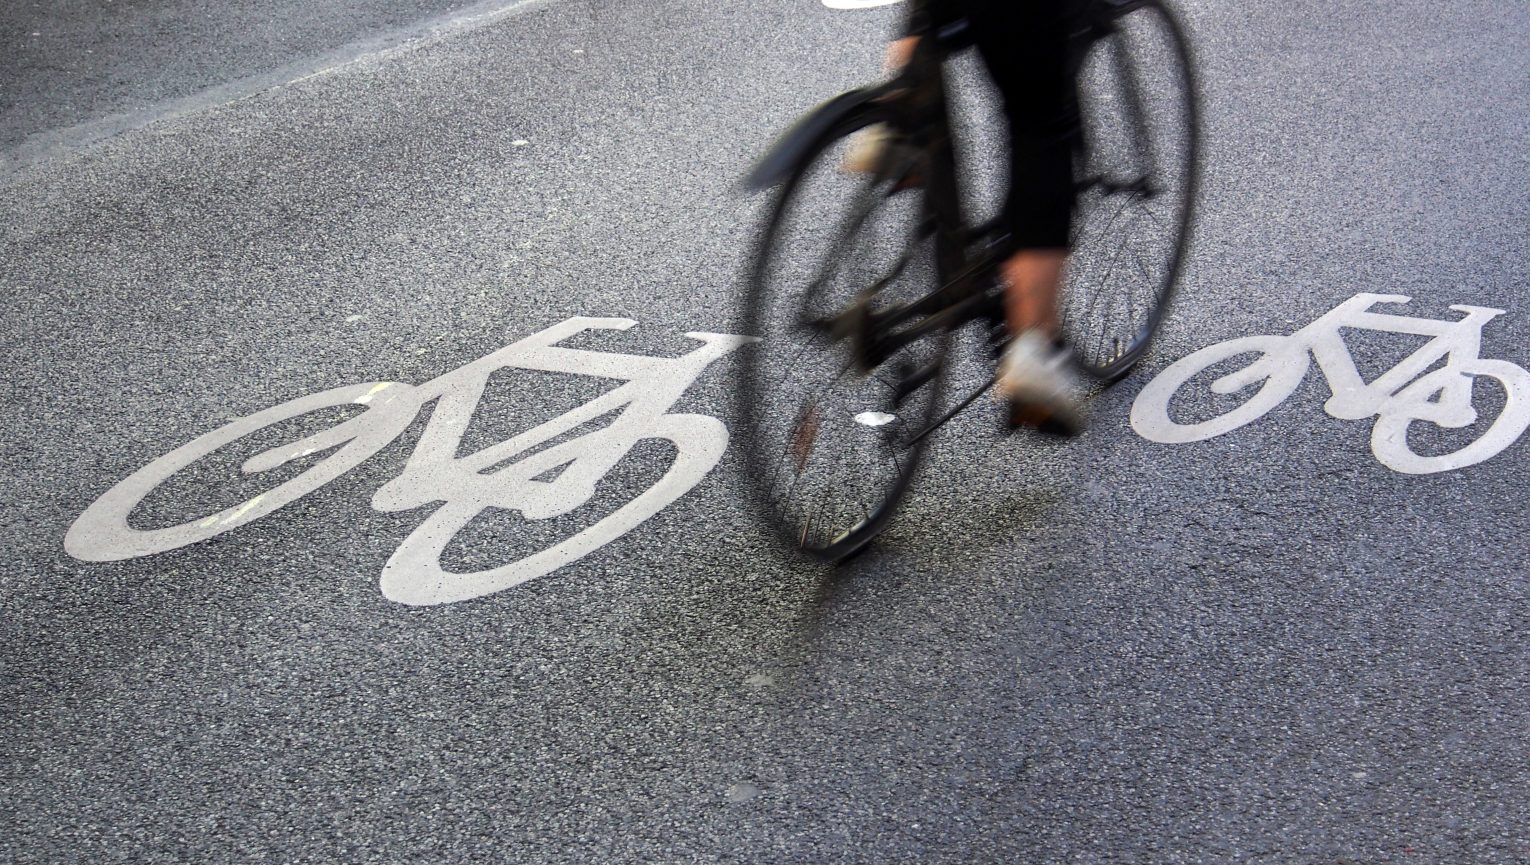 Wskazówki dla rowerzystów i kierowców: jak bezpiecznie poruszać się razem na drodze